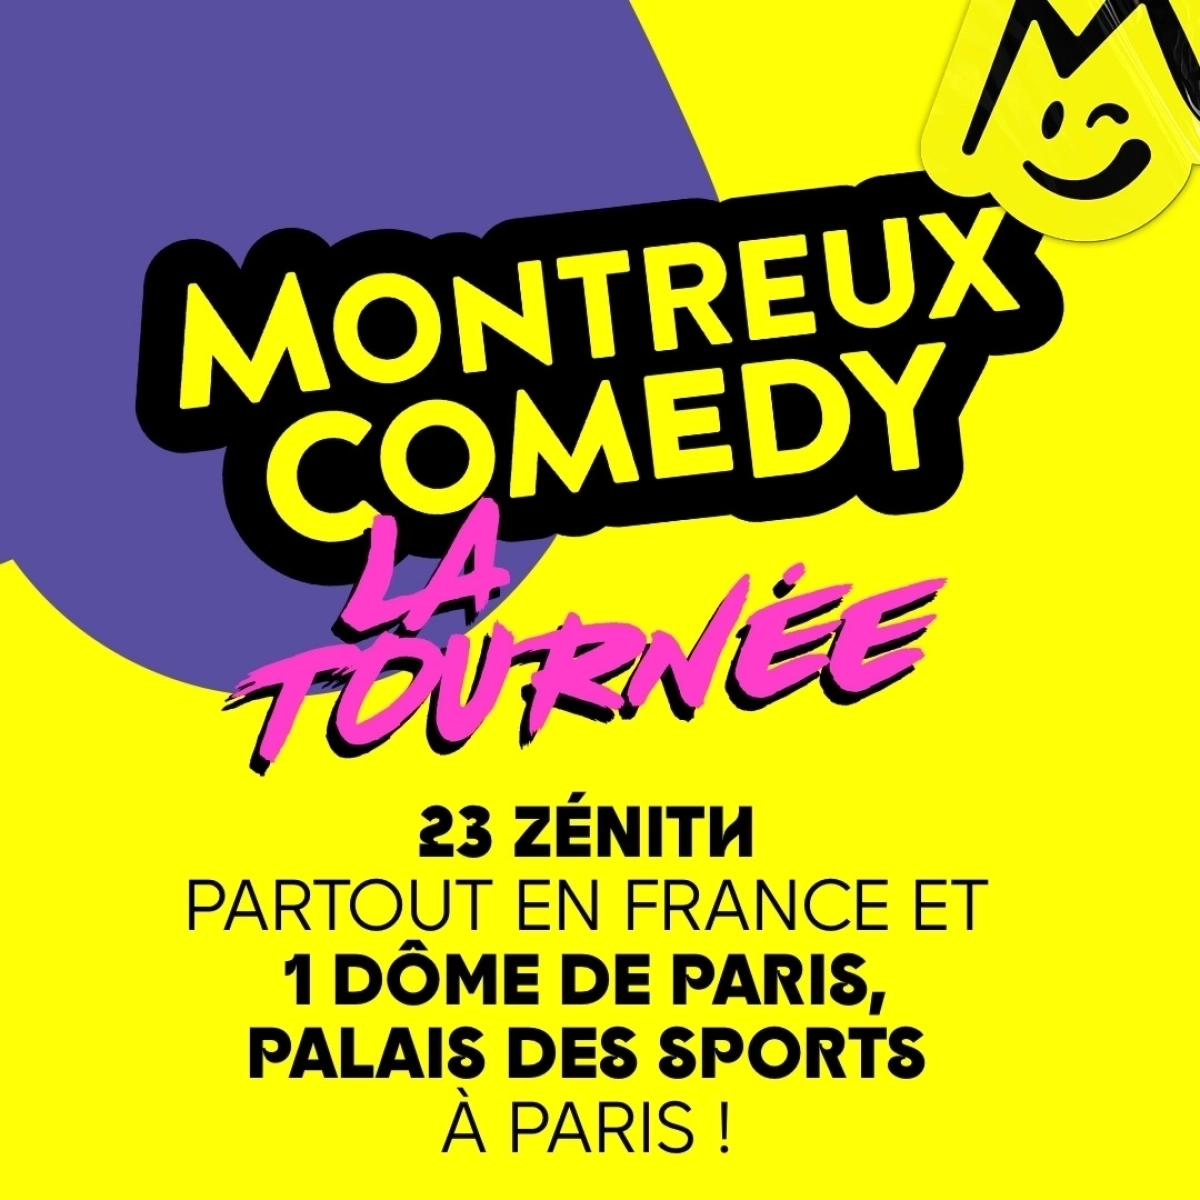 Montreux Comedy - La Tournée al Zenith Amiens Tickets